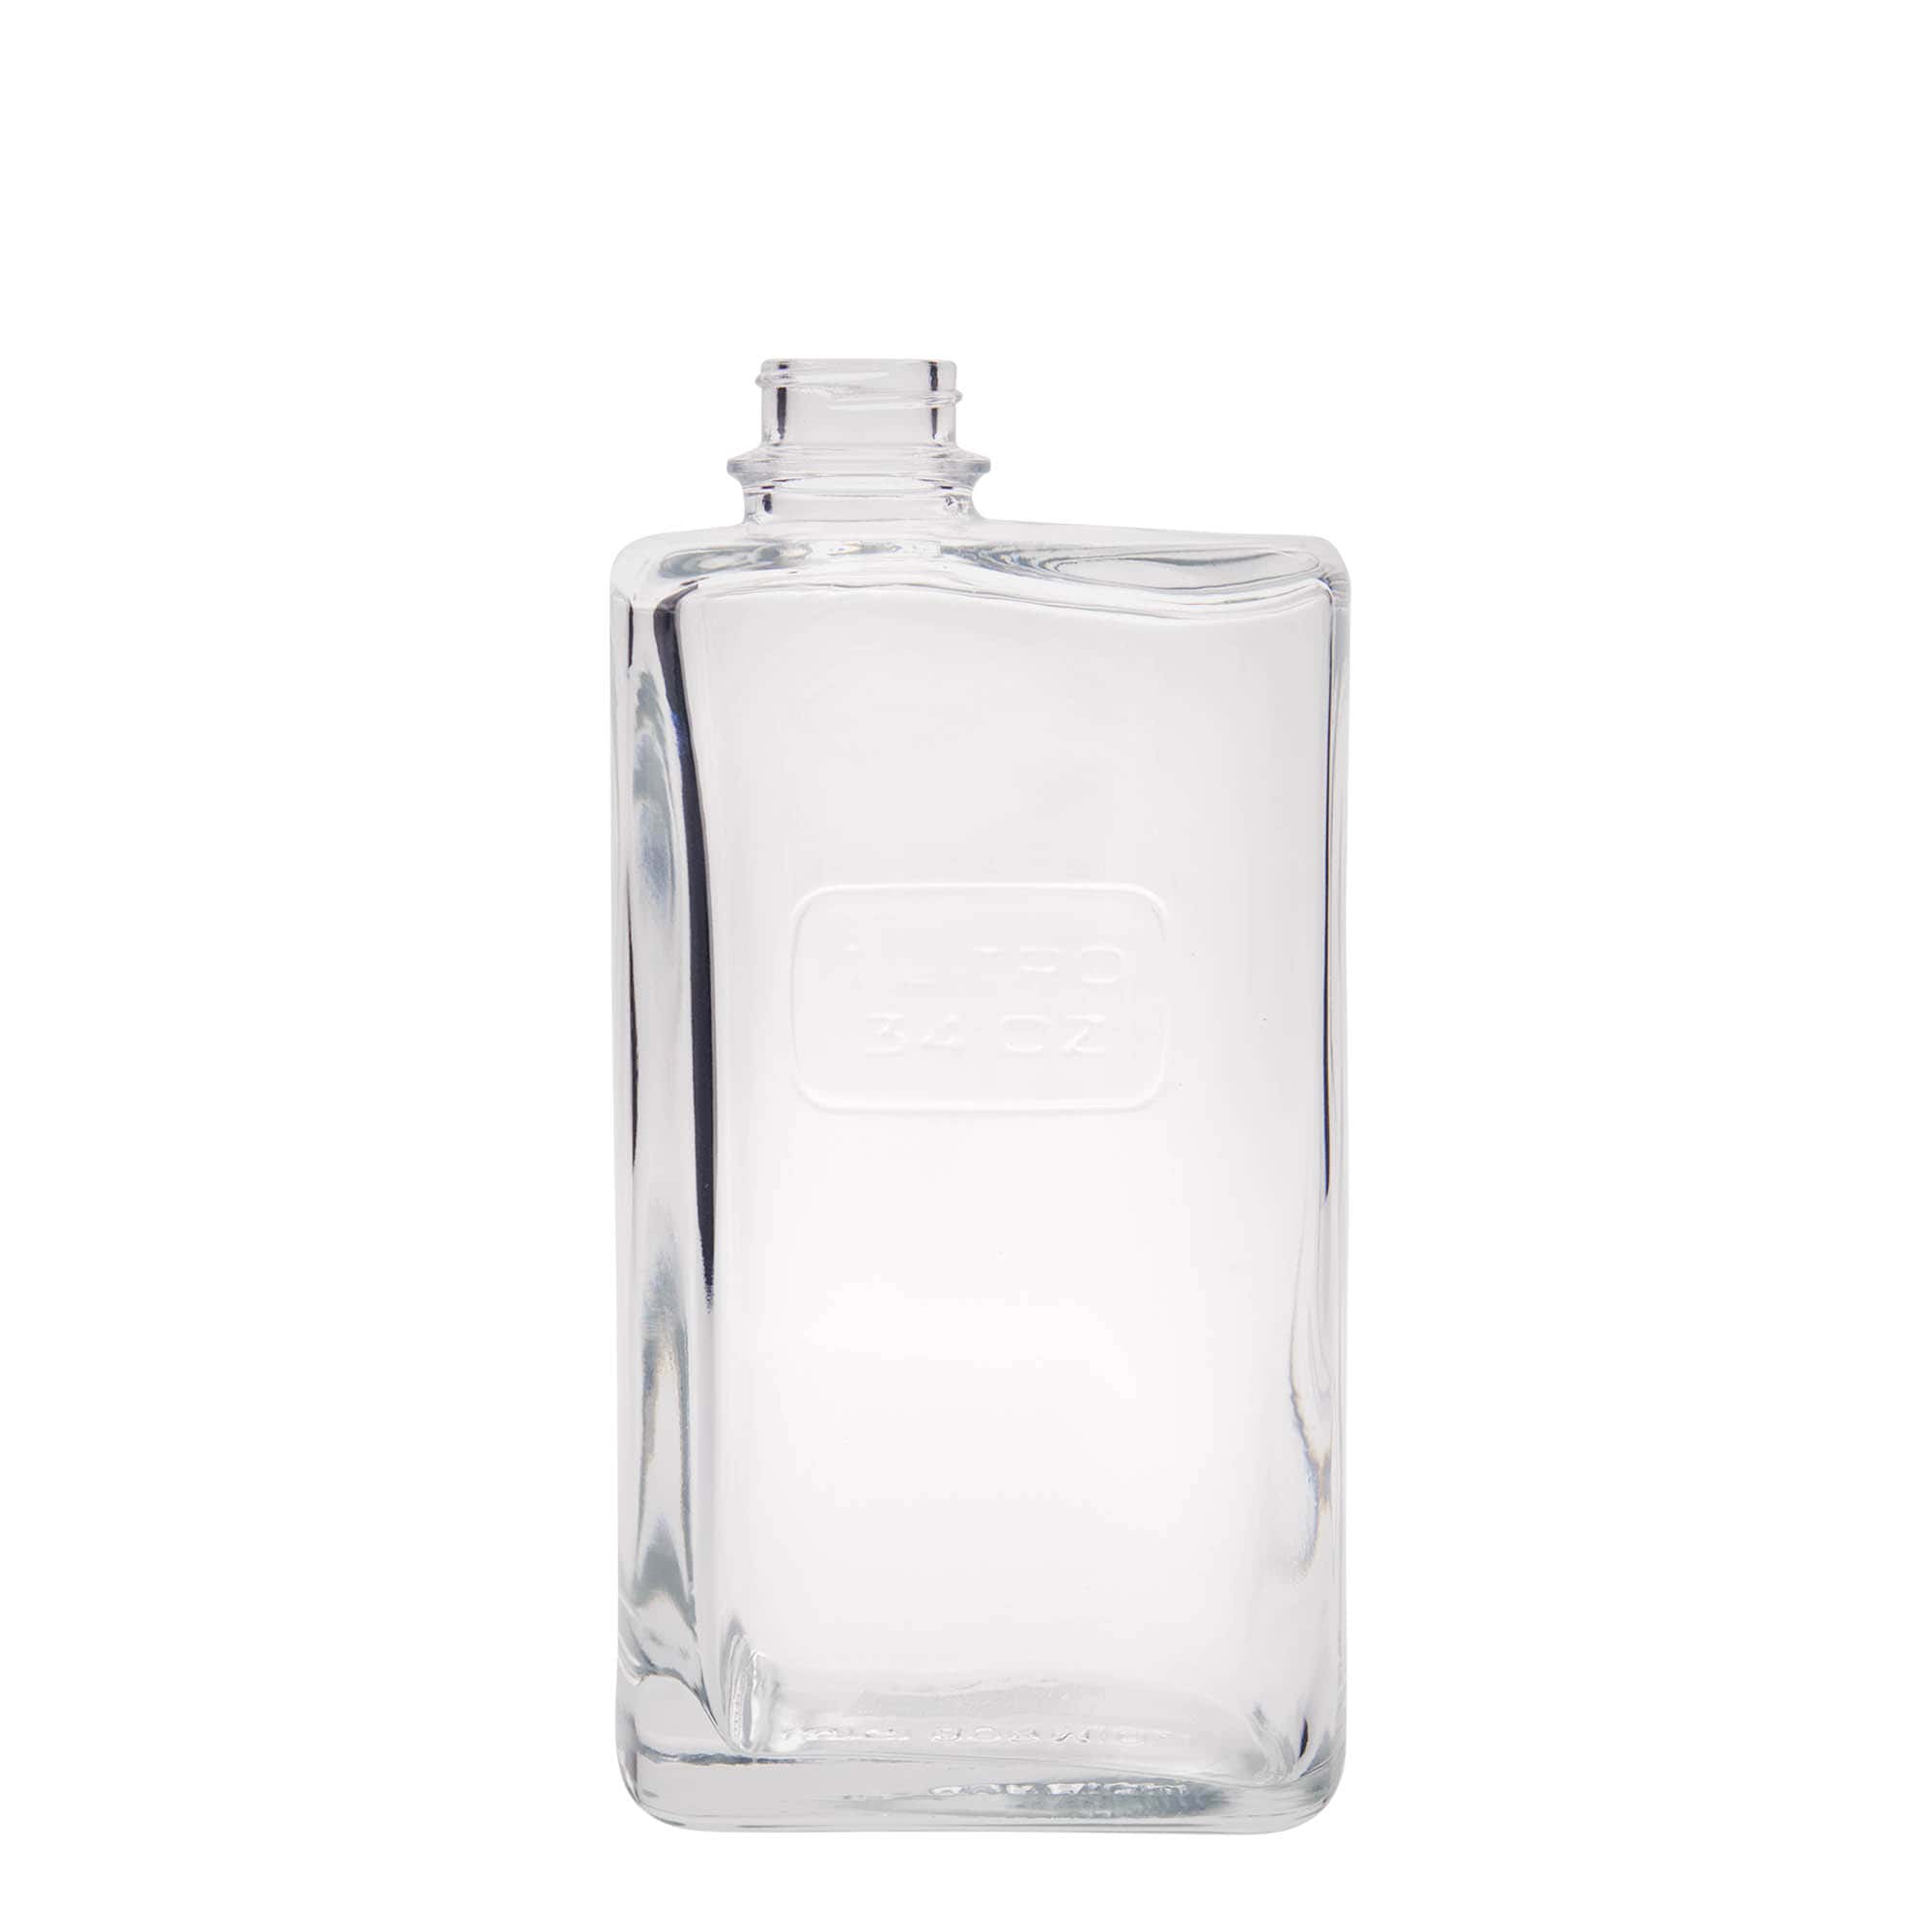 1,000 ml glass bottle 'Optima Lattina', rectangular, closure: screw cap